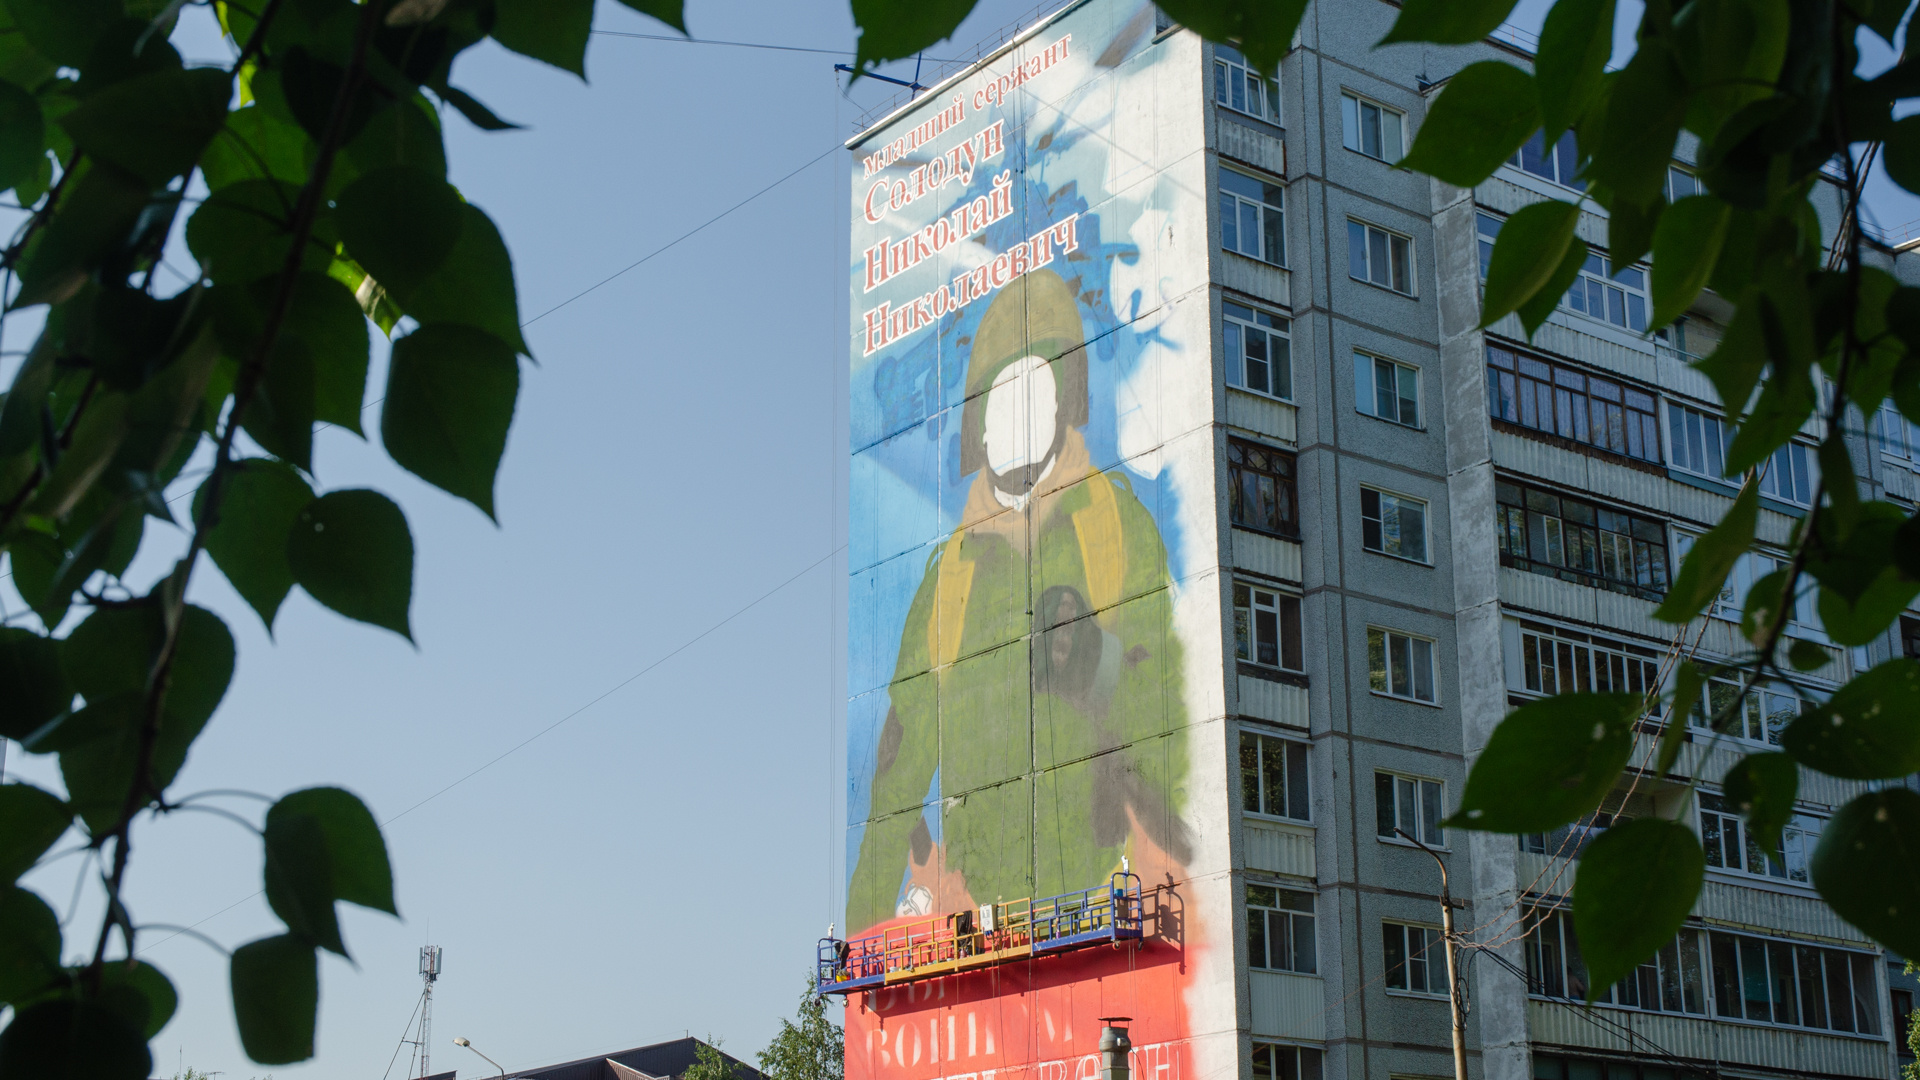 В Архангельске во весь дом рисуют портрет военного, погибшего в спецоперации